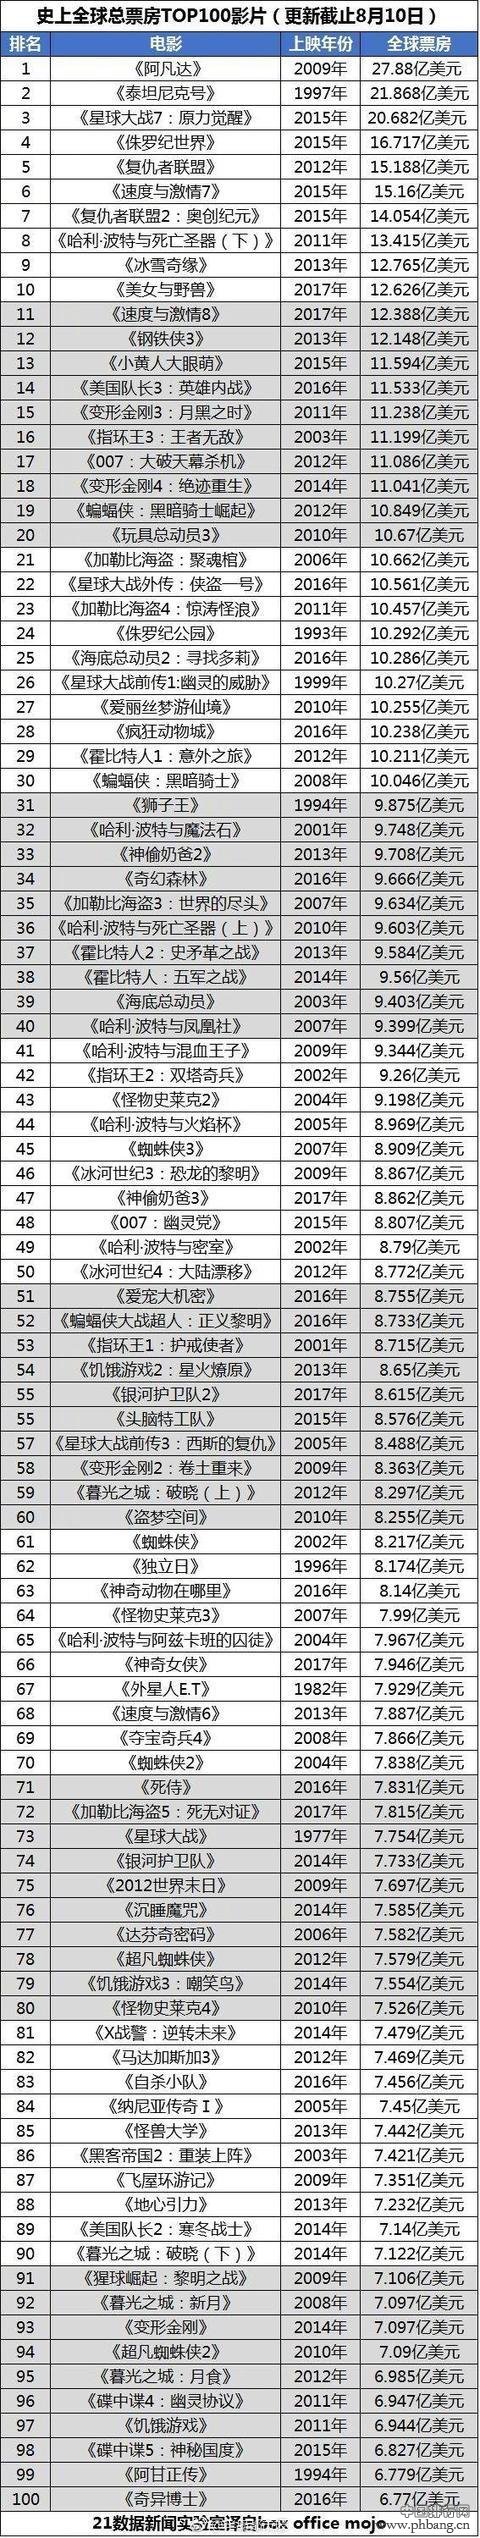 【战狼2】进入全球电影票房史TOP100